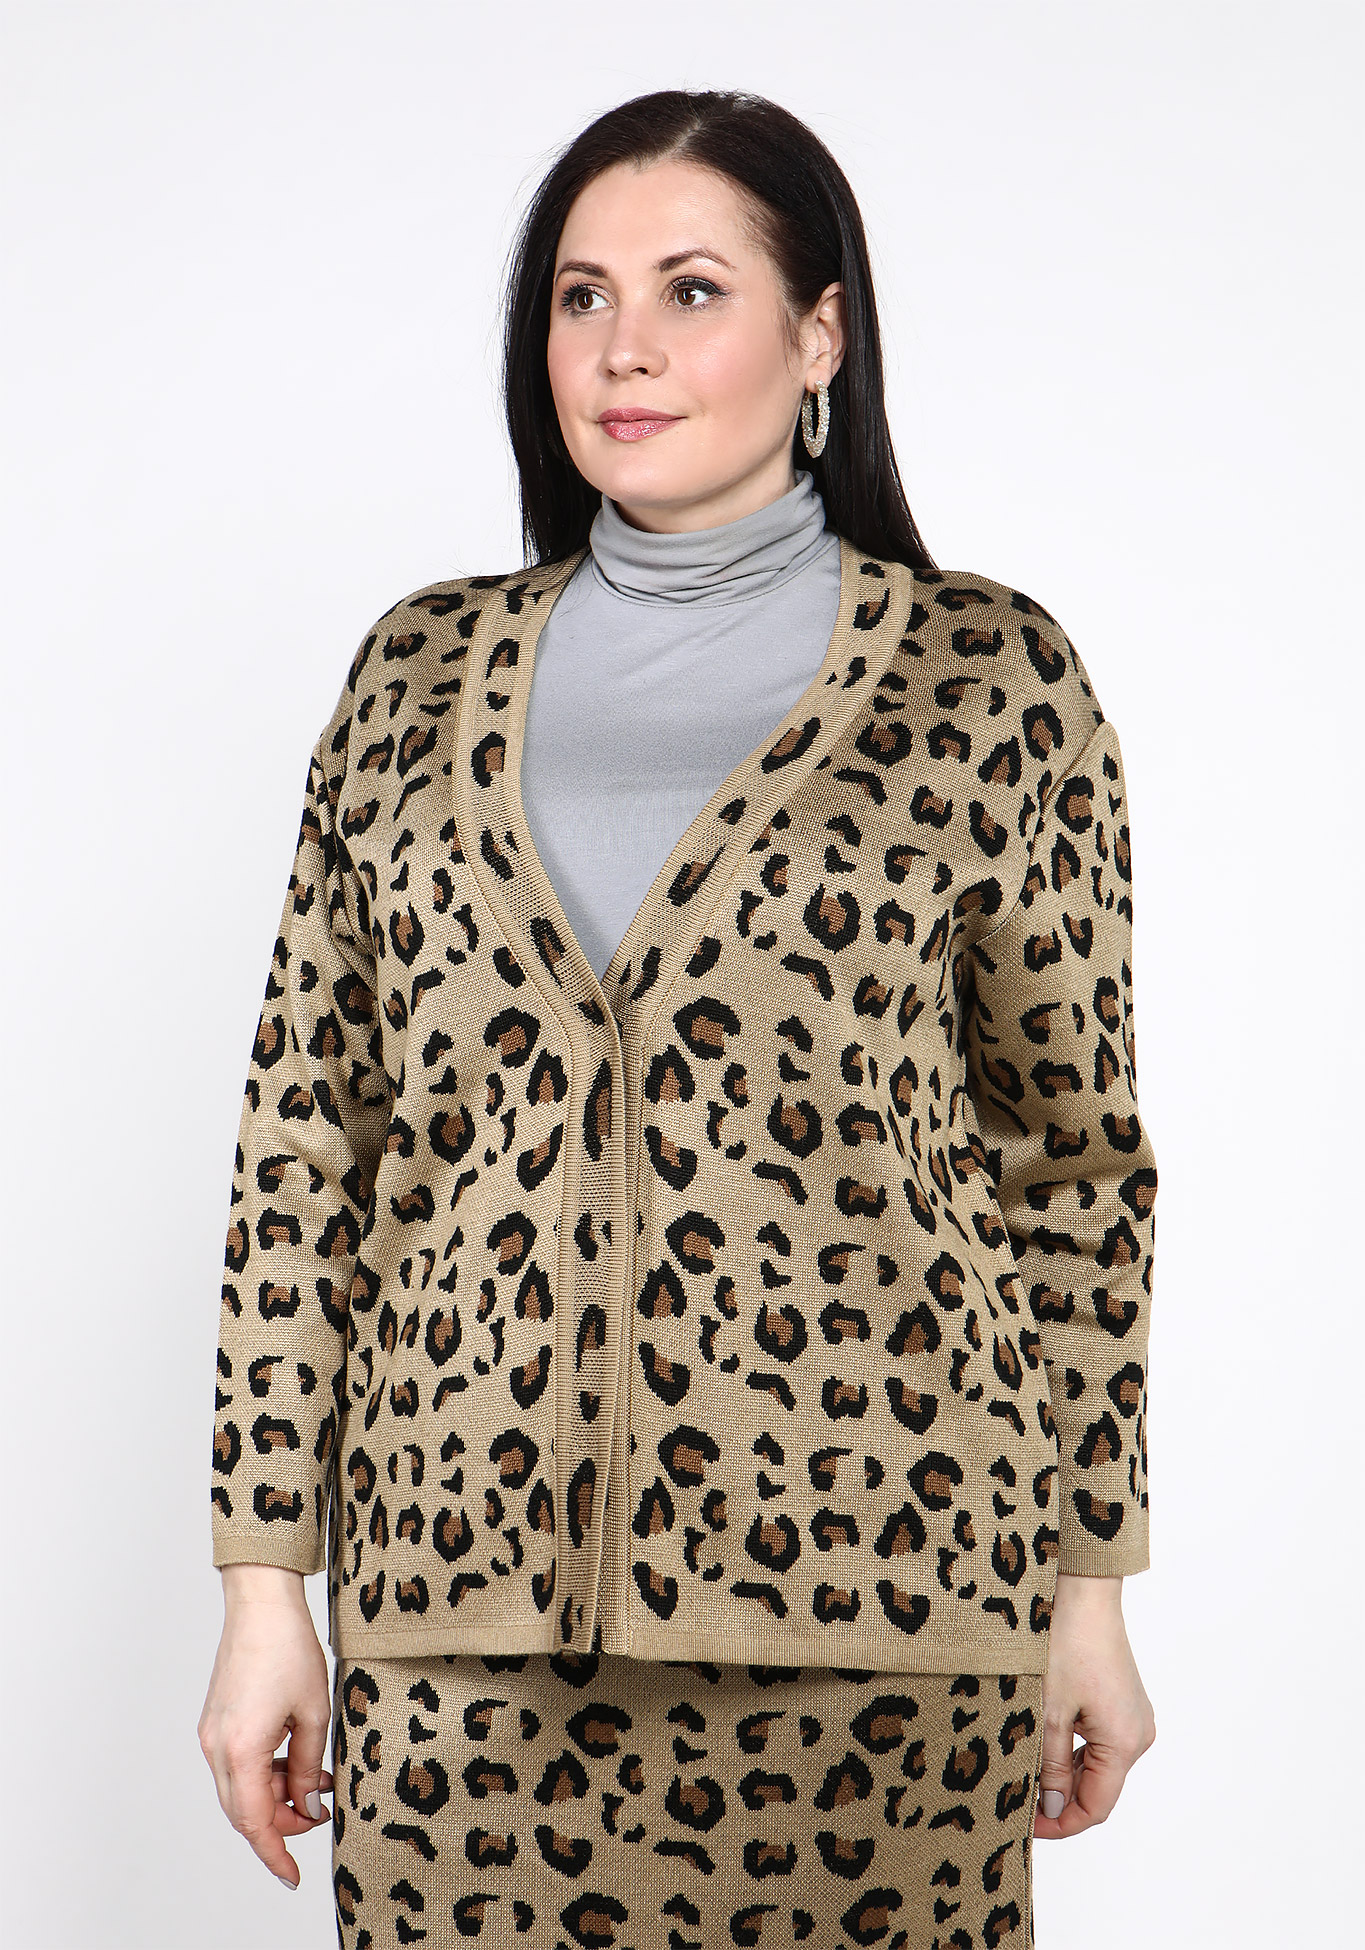 Жакет с леопардовым принтом Vivawool, размер 48, цвет молочный - фото 3